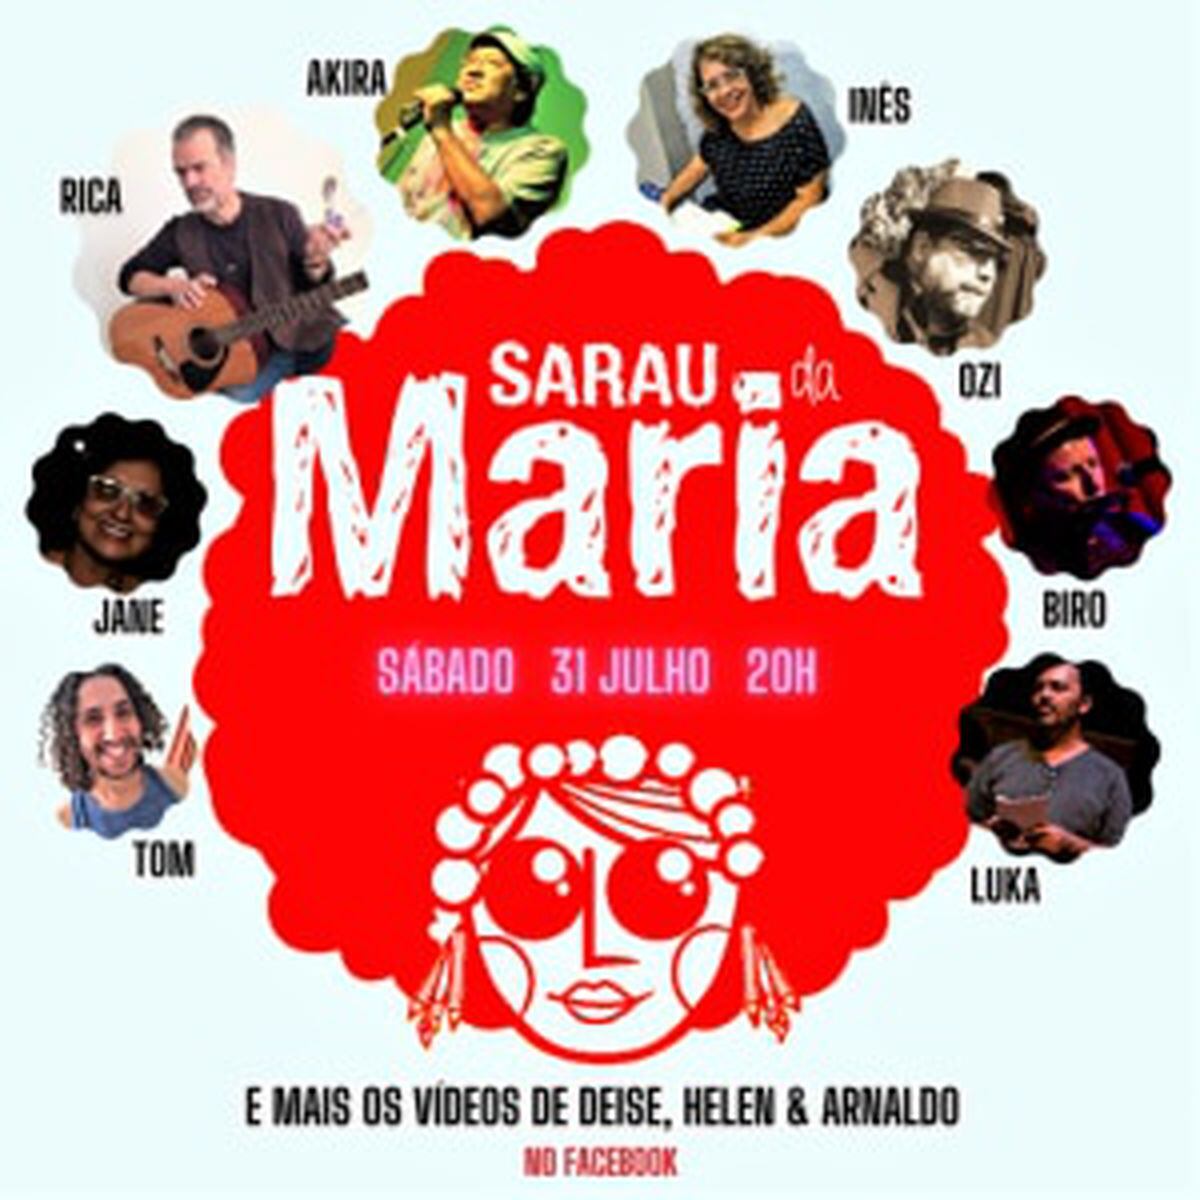 Sarau “Feminino Infinito” celebra o Dia Internacional da Mulher com poesia,  teatro e música ~ Não Me Kahlo